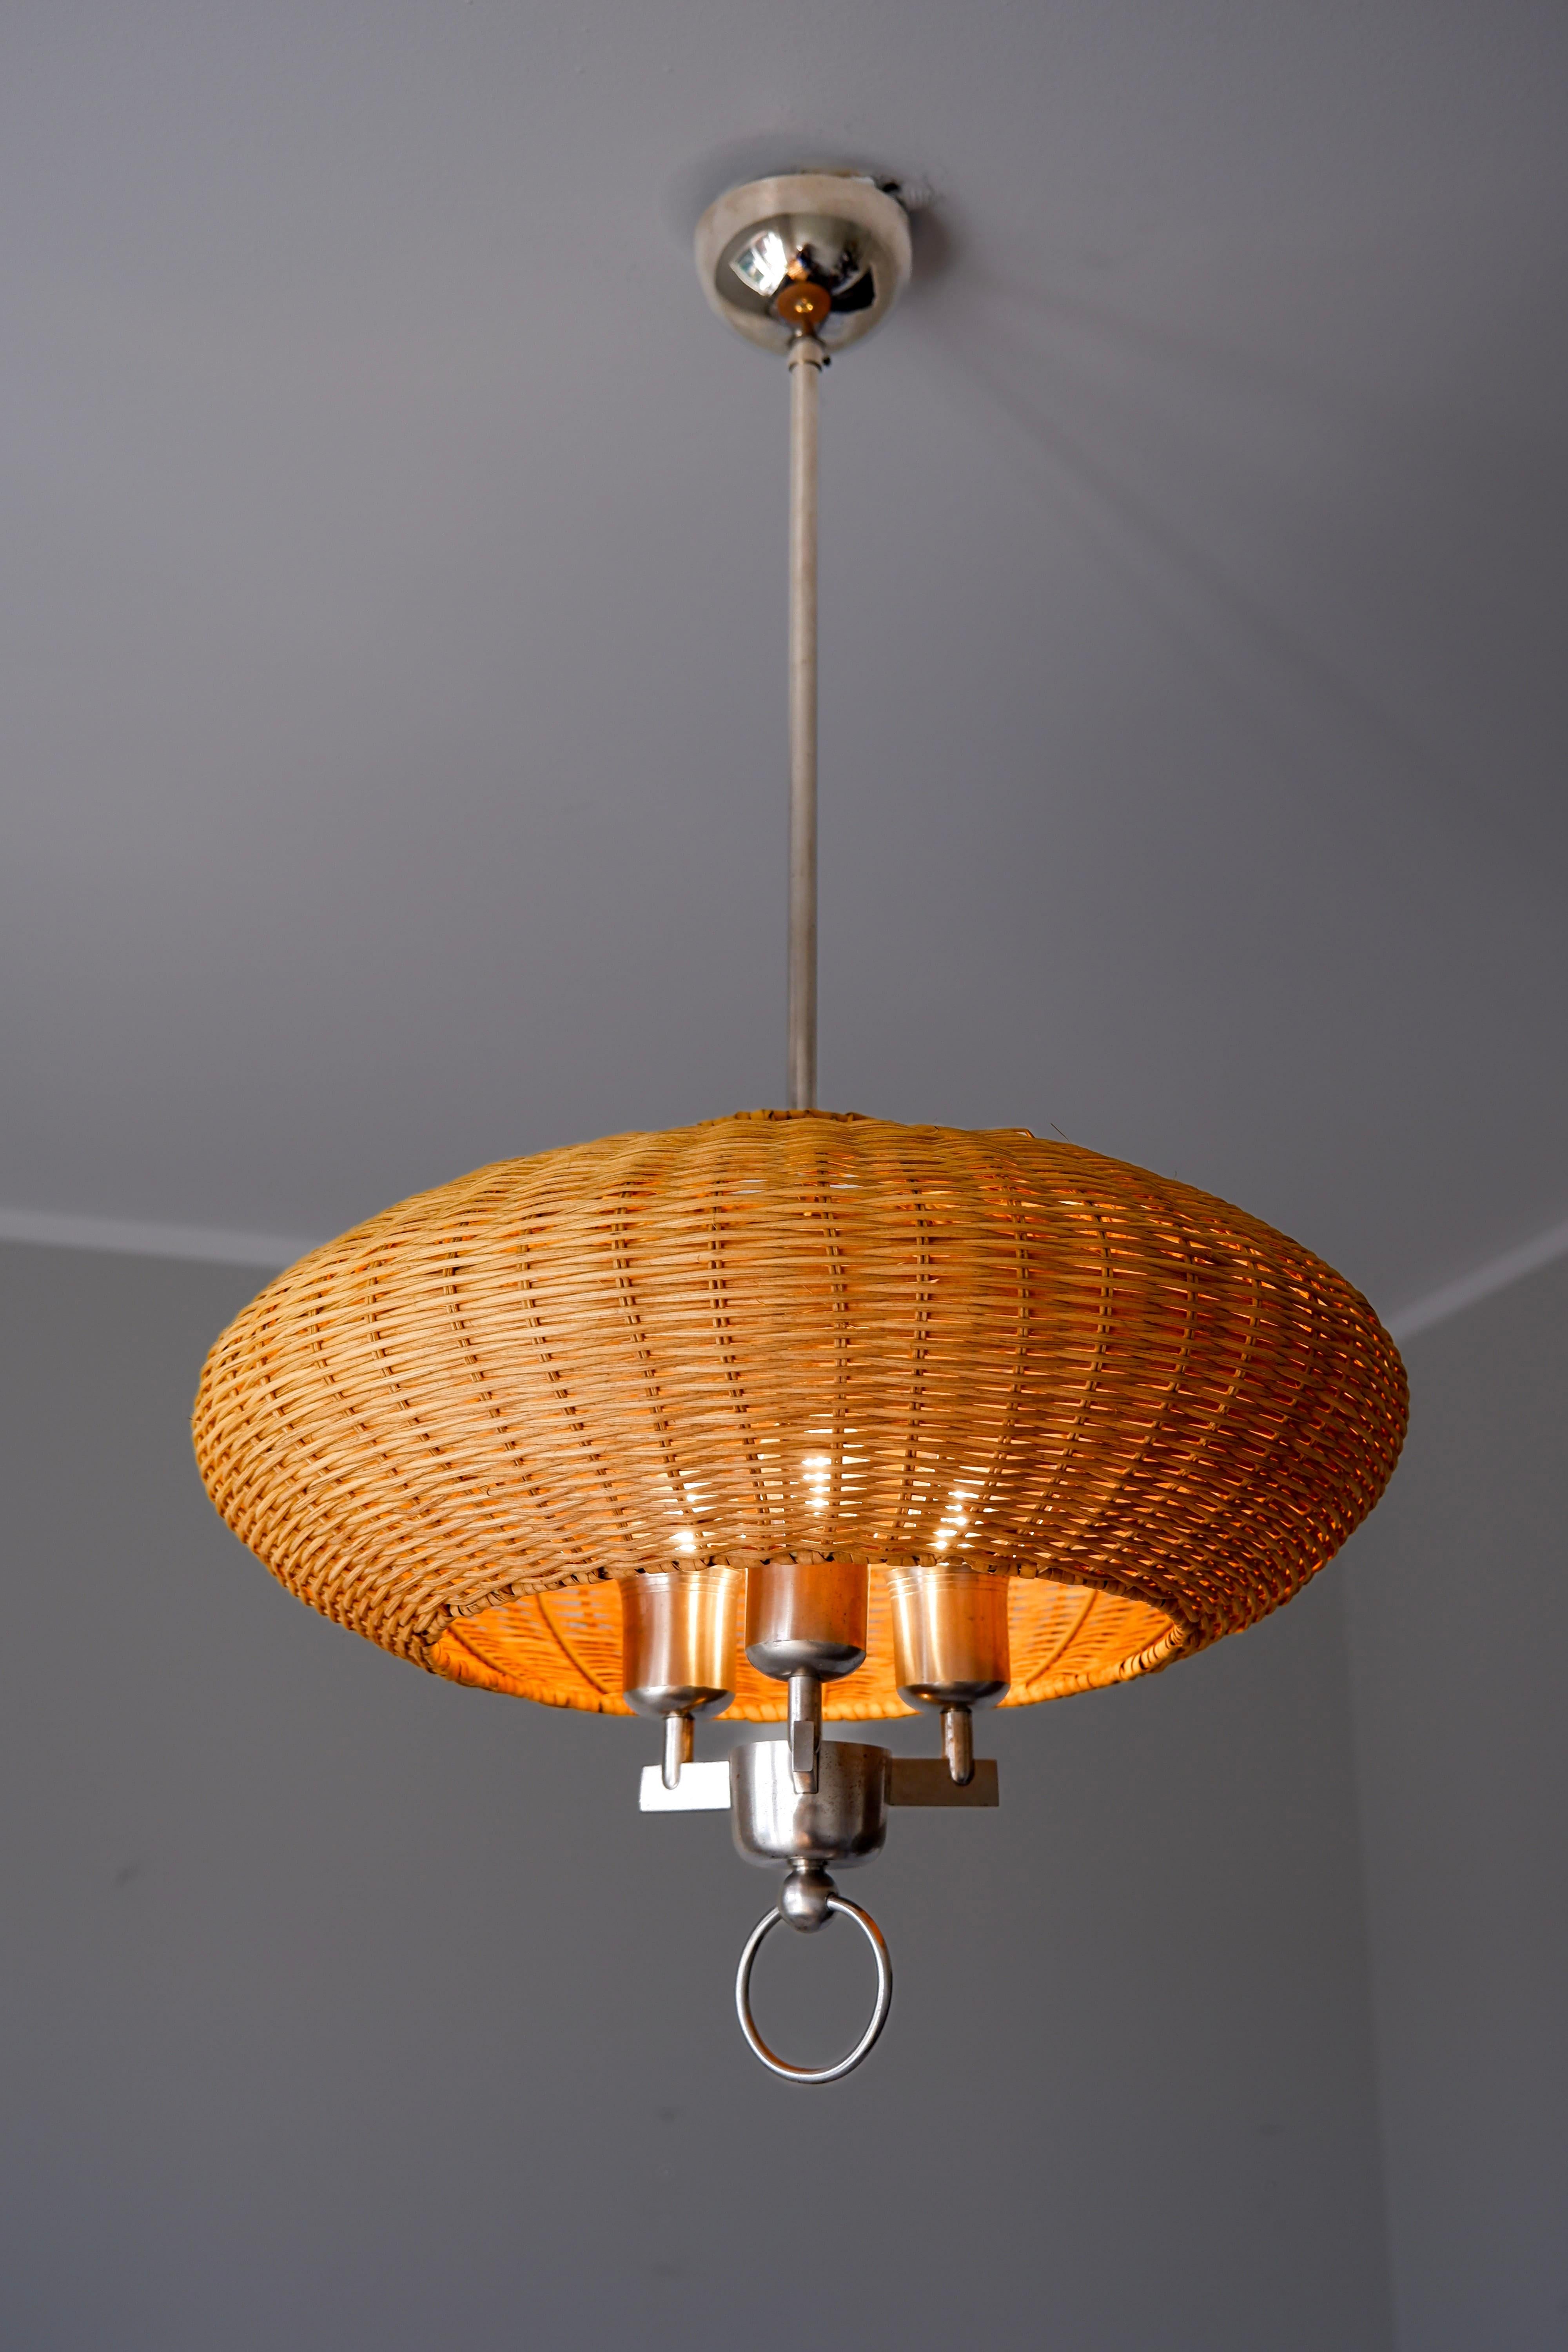 Plafonnier Paavo Tynell fabriqué par Taito dans les années 40. La lampe est en laiton plaqué Nikel avec un abat-jour en bois qui a été restauré à partir de l'abat-jour d'origine. Ce modèle est l'un des premiers conçus par Paavo Tynell dans les